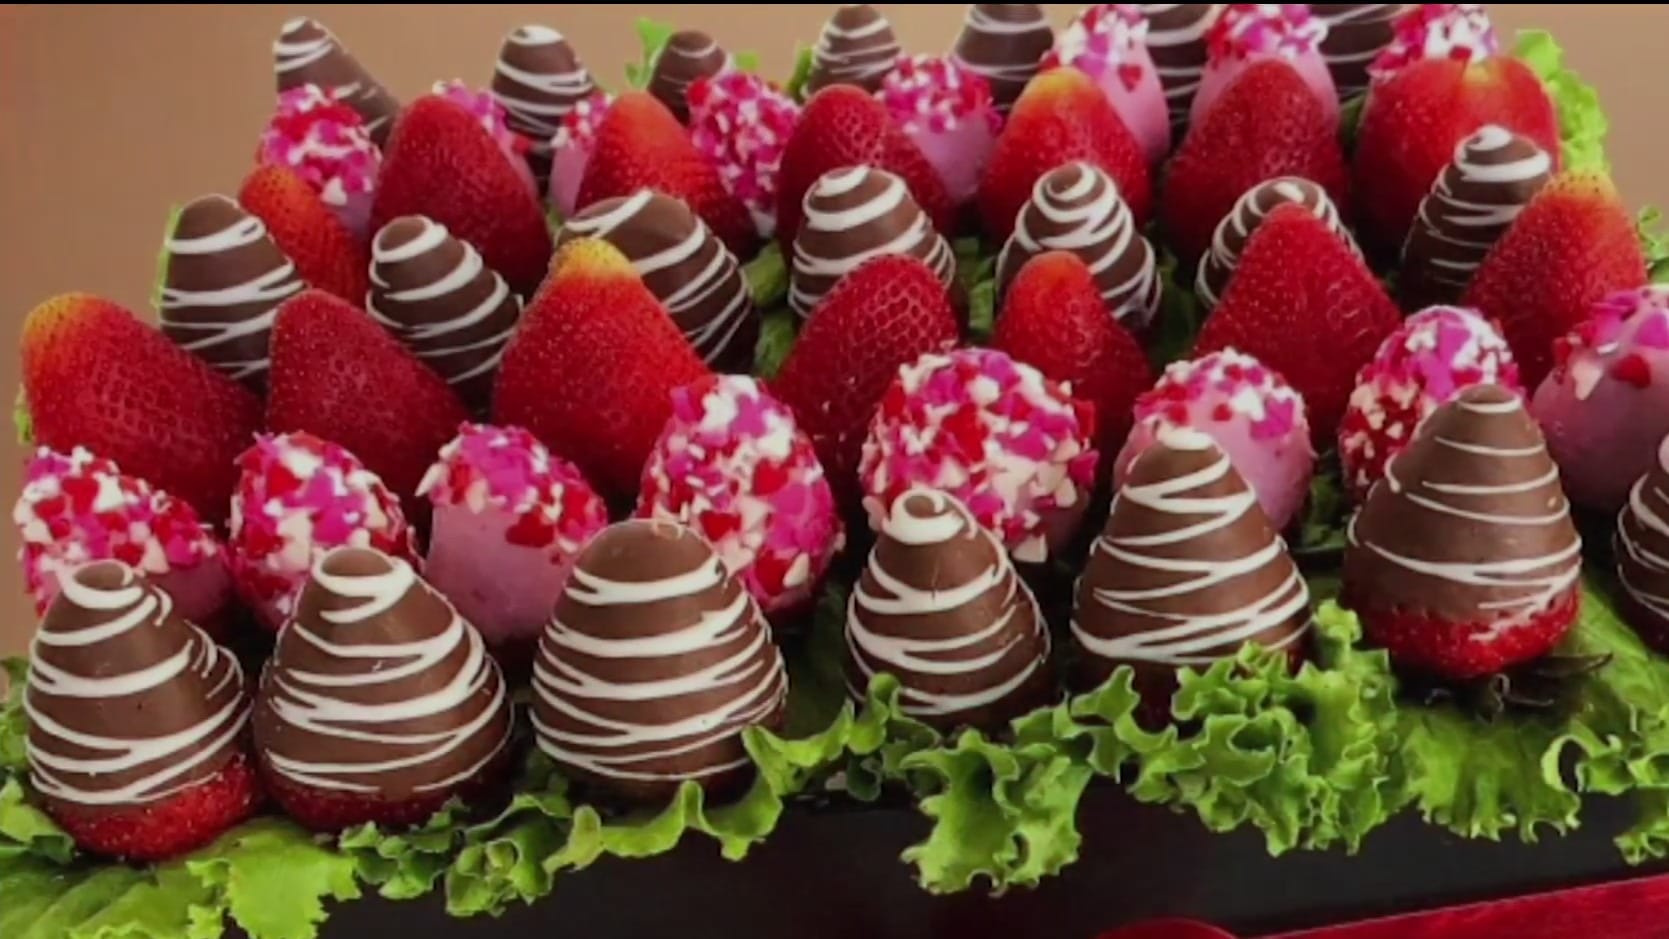 arreglos de frutas cubiertas de chocolate el regalo perfecto para cualquier ocasion